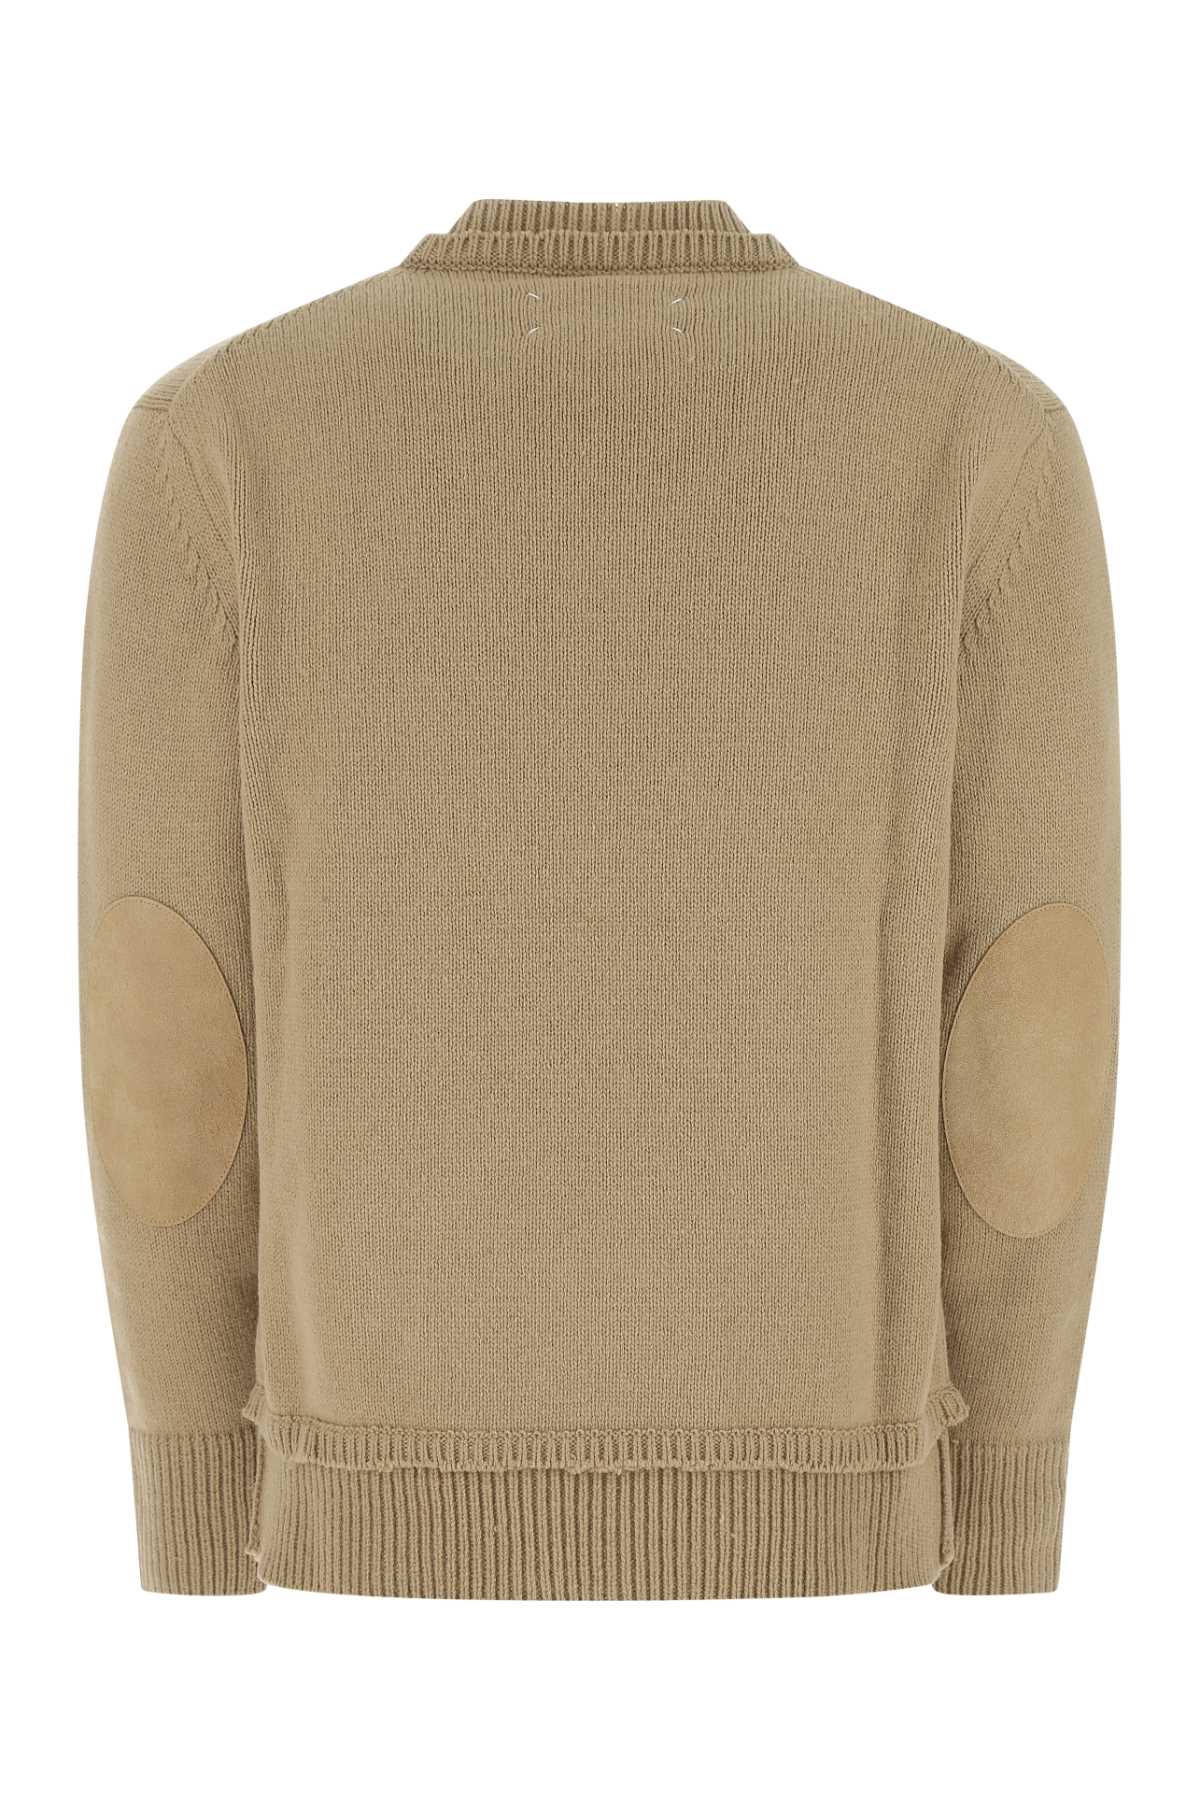 Maison Margiela Beige Wool Blend Sweater In 106f